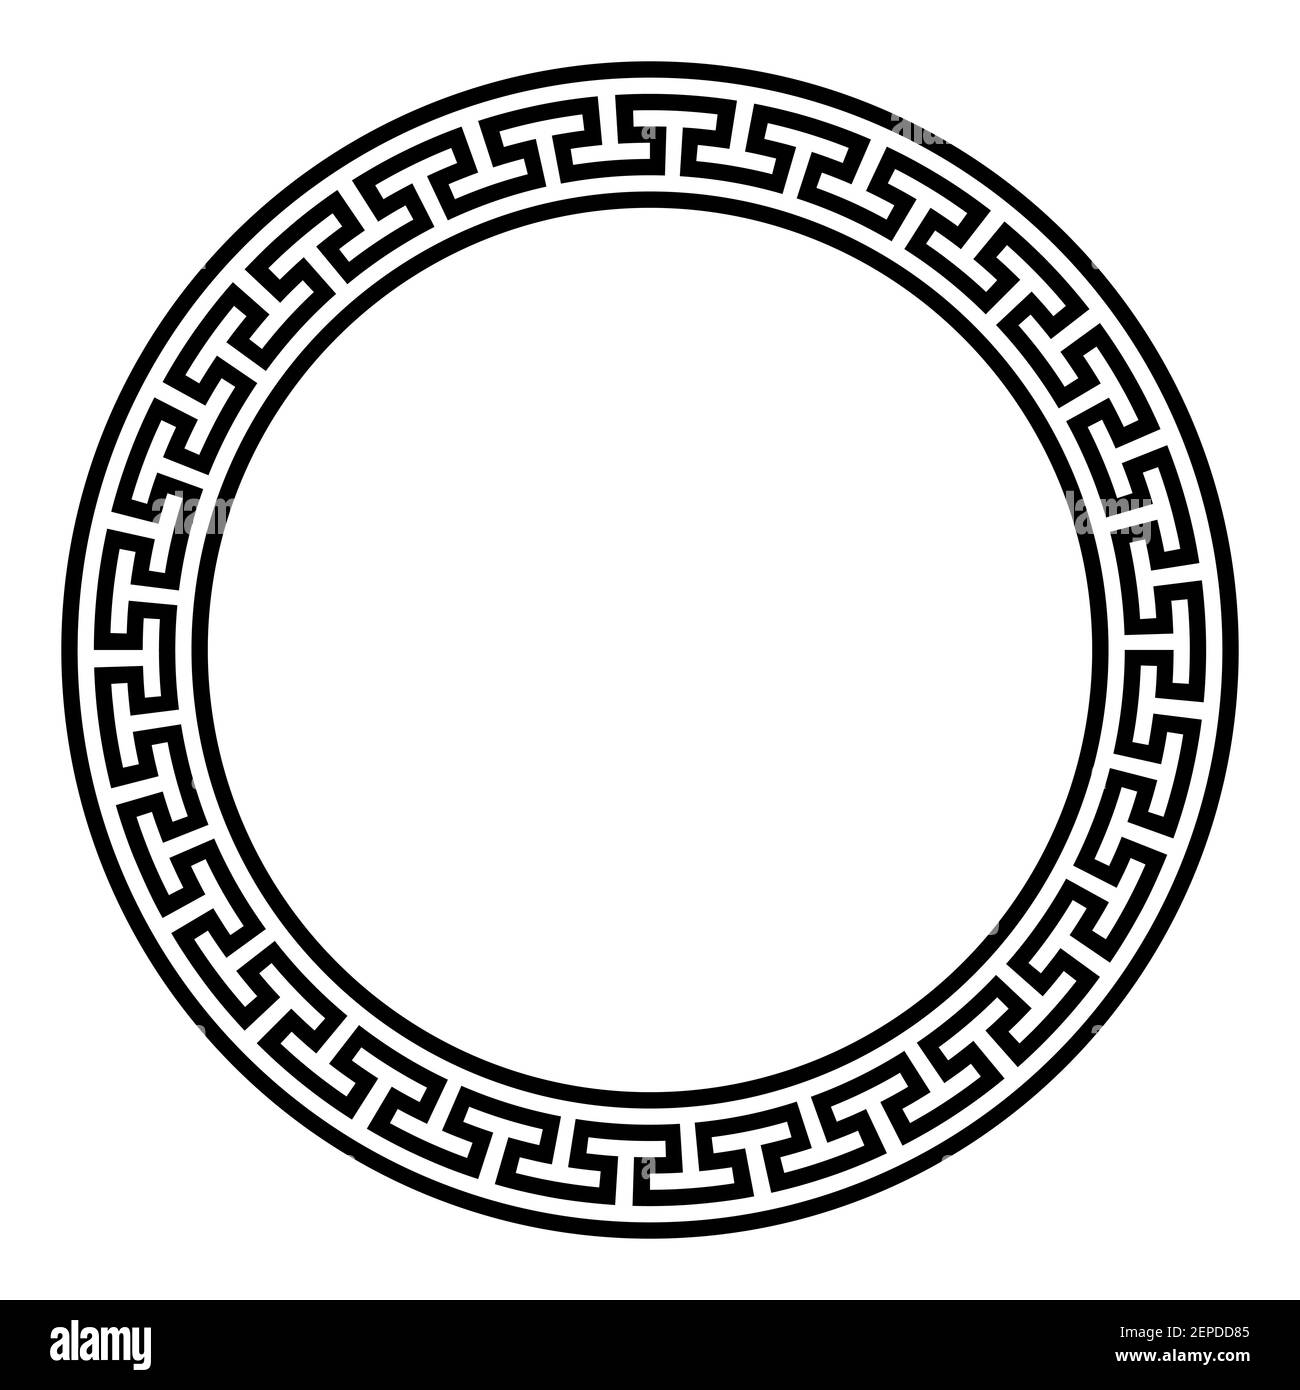 Kreisrahmen mit einfachem Mäander-Muster. Dekorative Bordüre aus durchgehenden Linien, geformt zu einem nahtlosen Motiv. Auch bekannt als griechisches Schlüsselmuster. Stockfoto